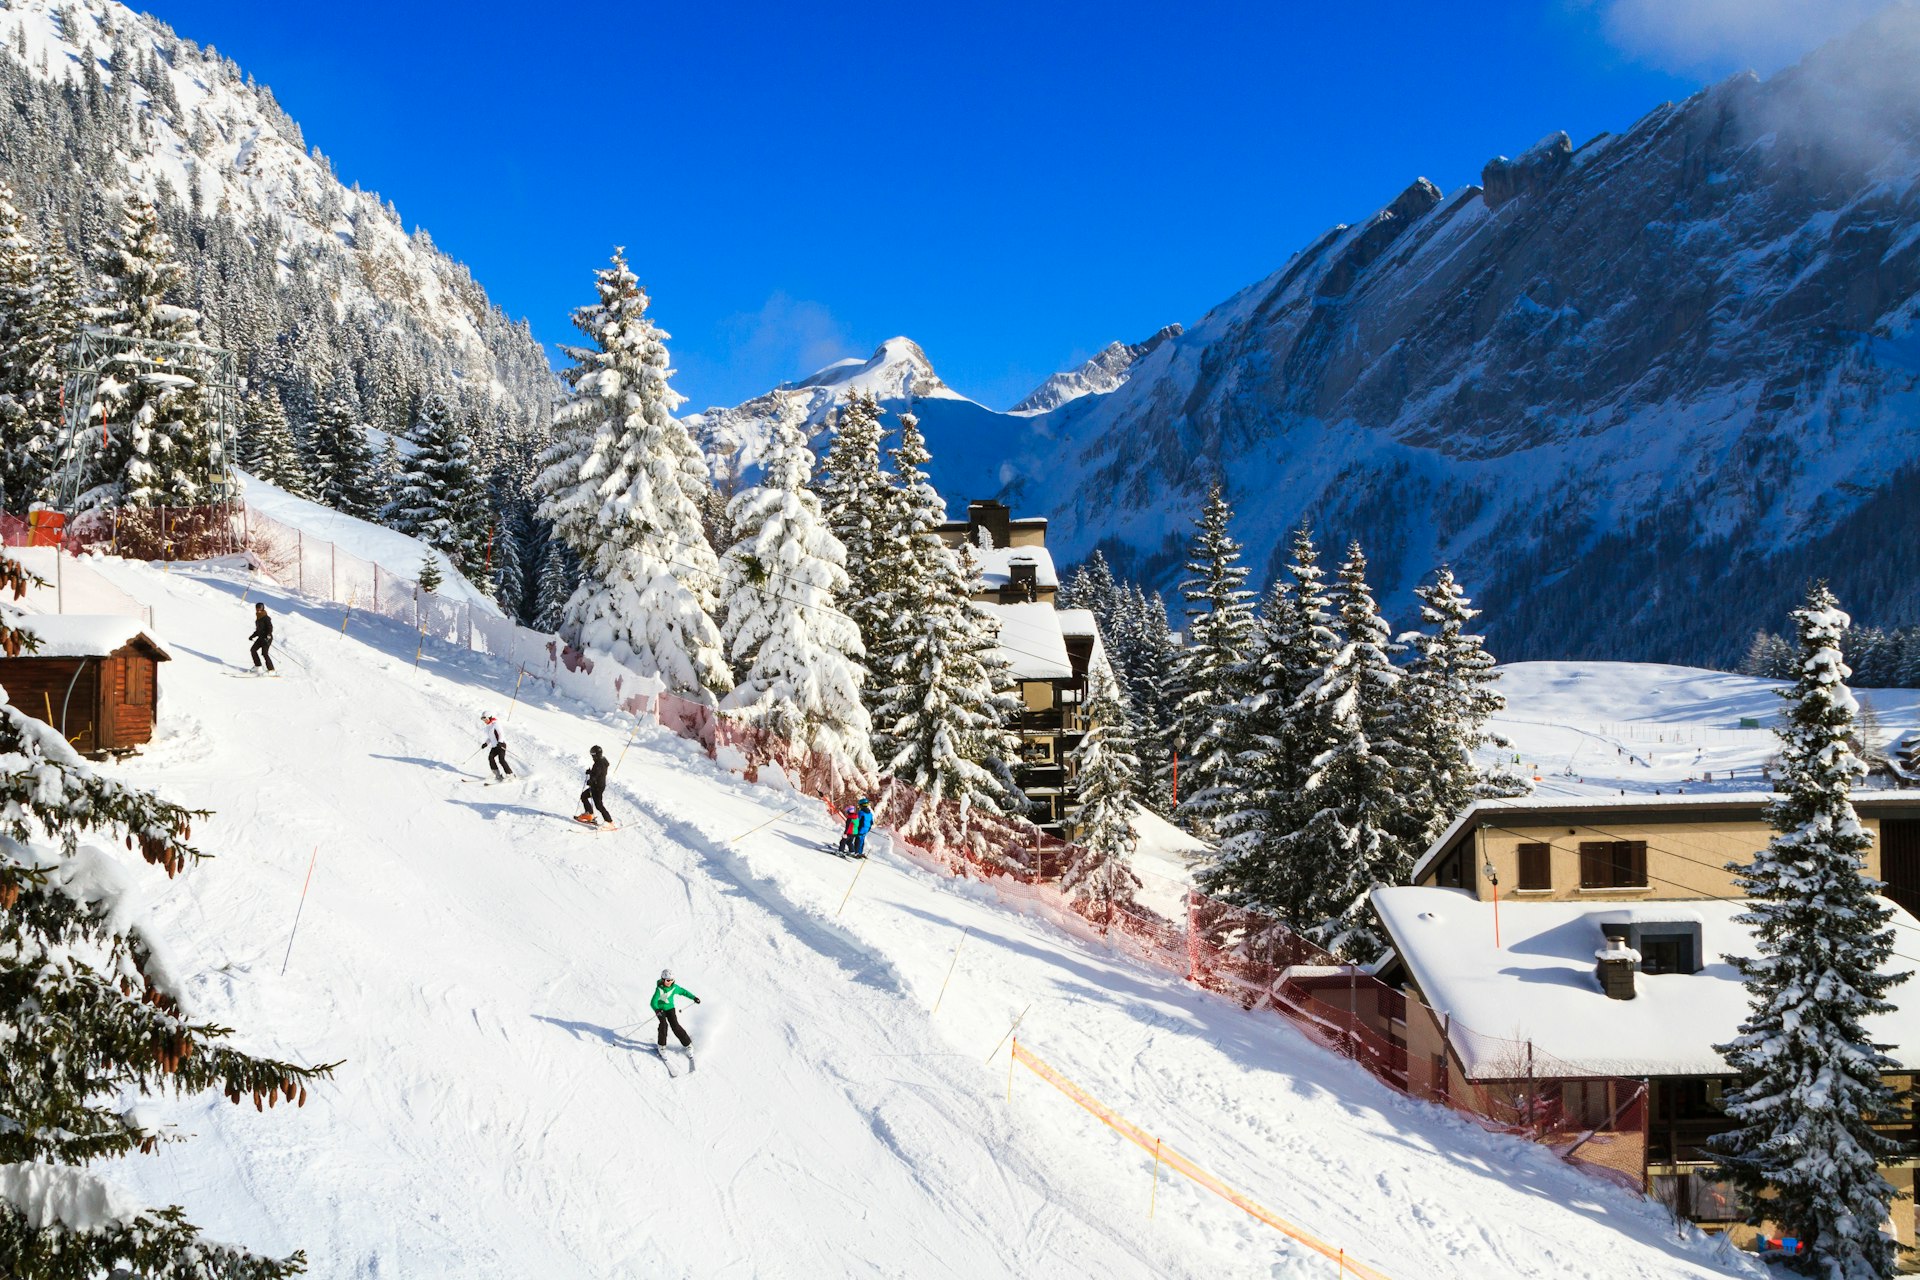 Winter sports in Villars-sur-Ollon, Switzerland